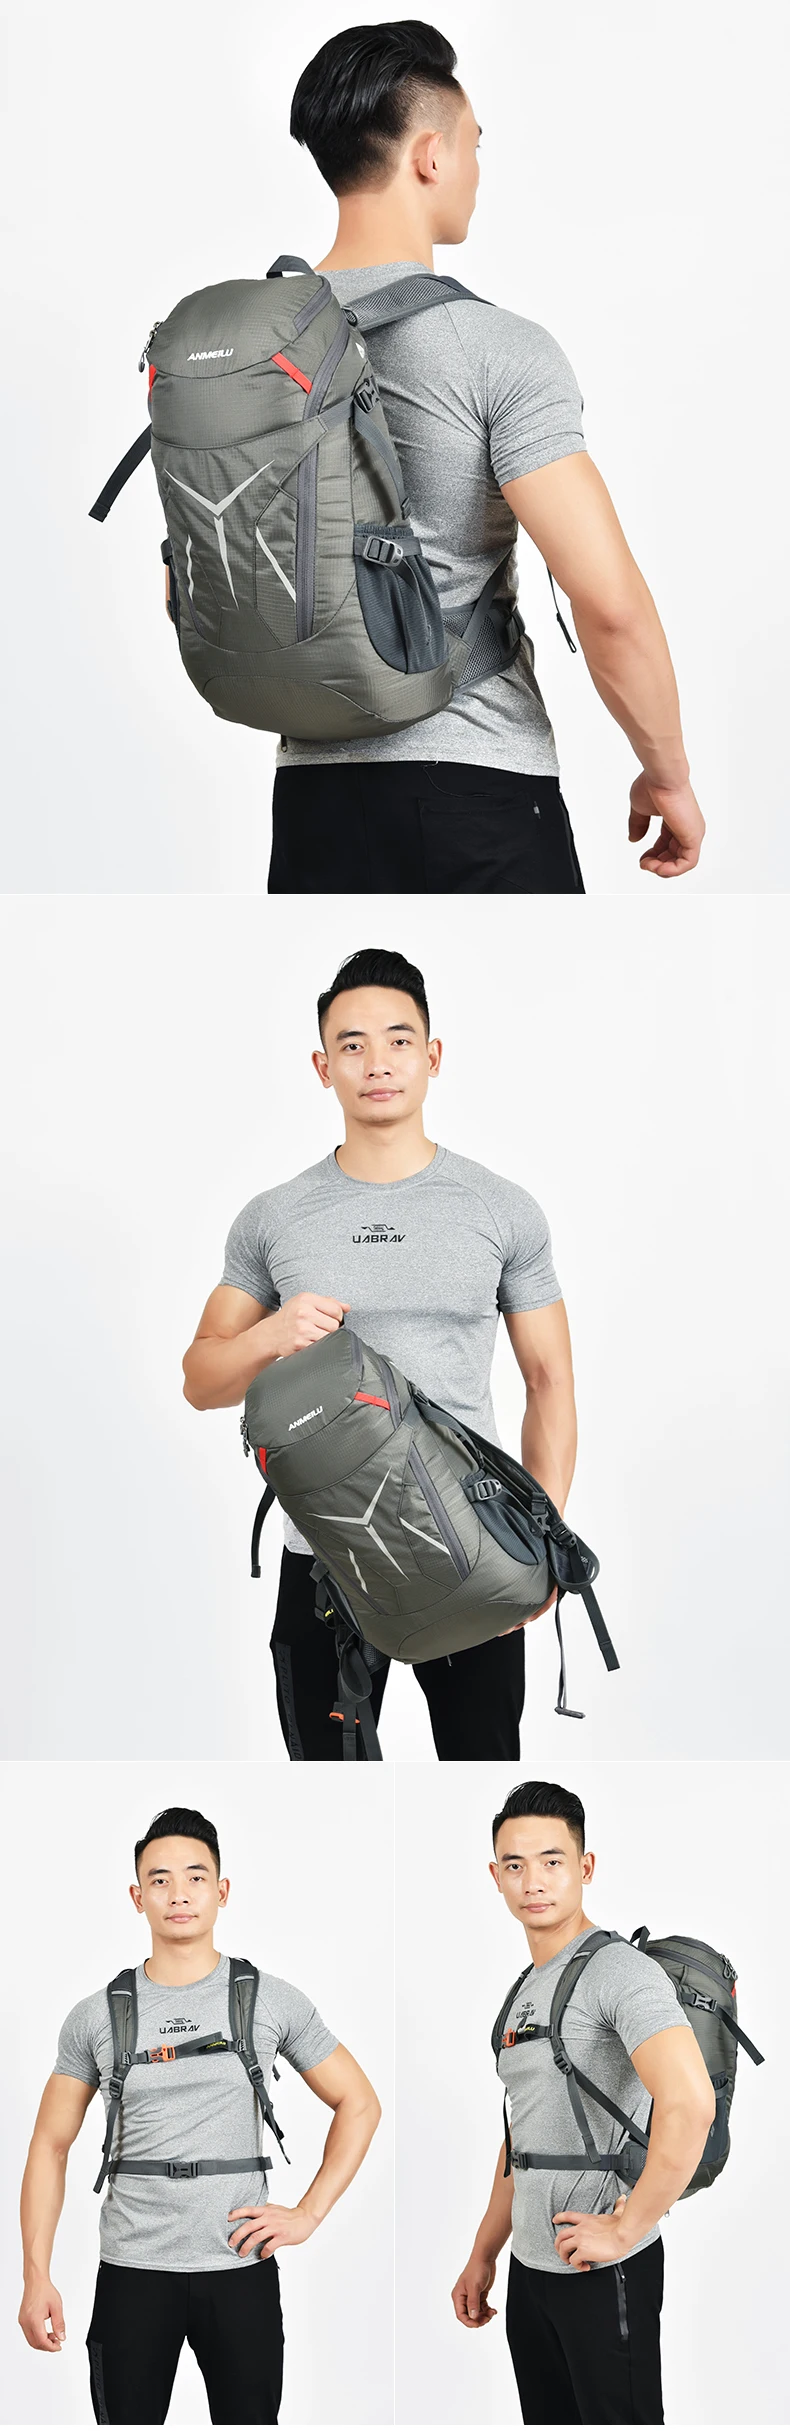 ANMEILU 20L рюкзак водонепроницаемый складной походный рюкзак для верховой езды путешествия Кемпинг рюкзак для путешествия сумки для мужчин и женщин